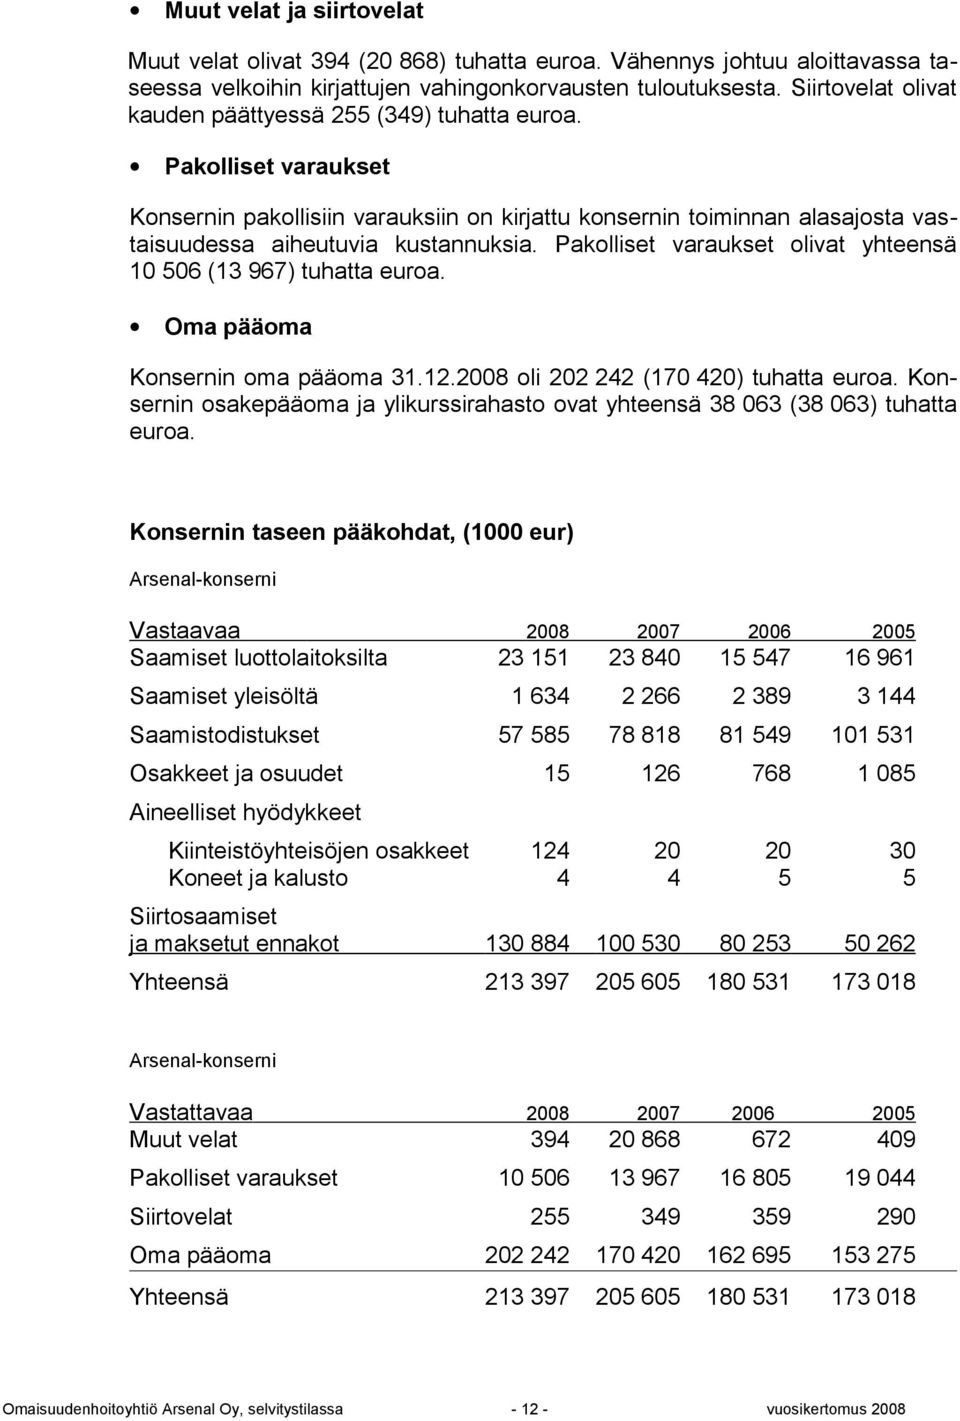 Pakolliset varaukset olivat yhteensä 10 506 (13 967) tuhatta euroa. Oma pääoma n oma pääoma 31.12.2008 oli 202 242 (170 420) tuhatta euroa.